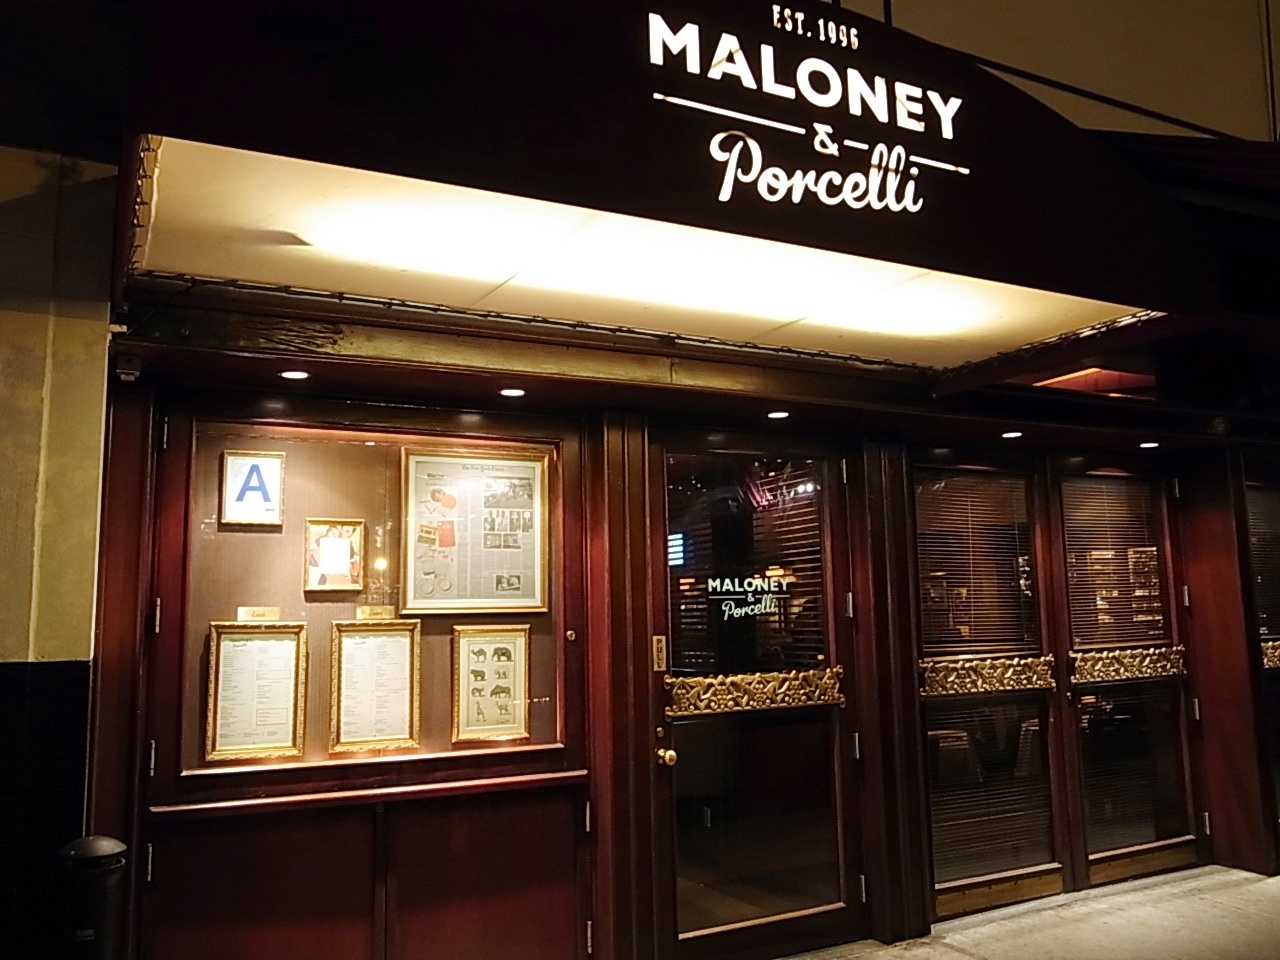 昼にマティーニを軽く３杯 なんて懐かしい旧き良き時代の面影を感じさせるステーキハウス マロニー ポセリ Maloney Porcelli